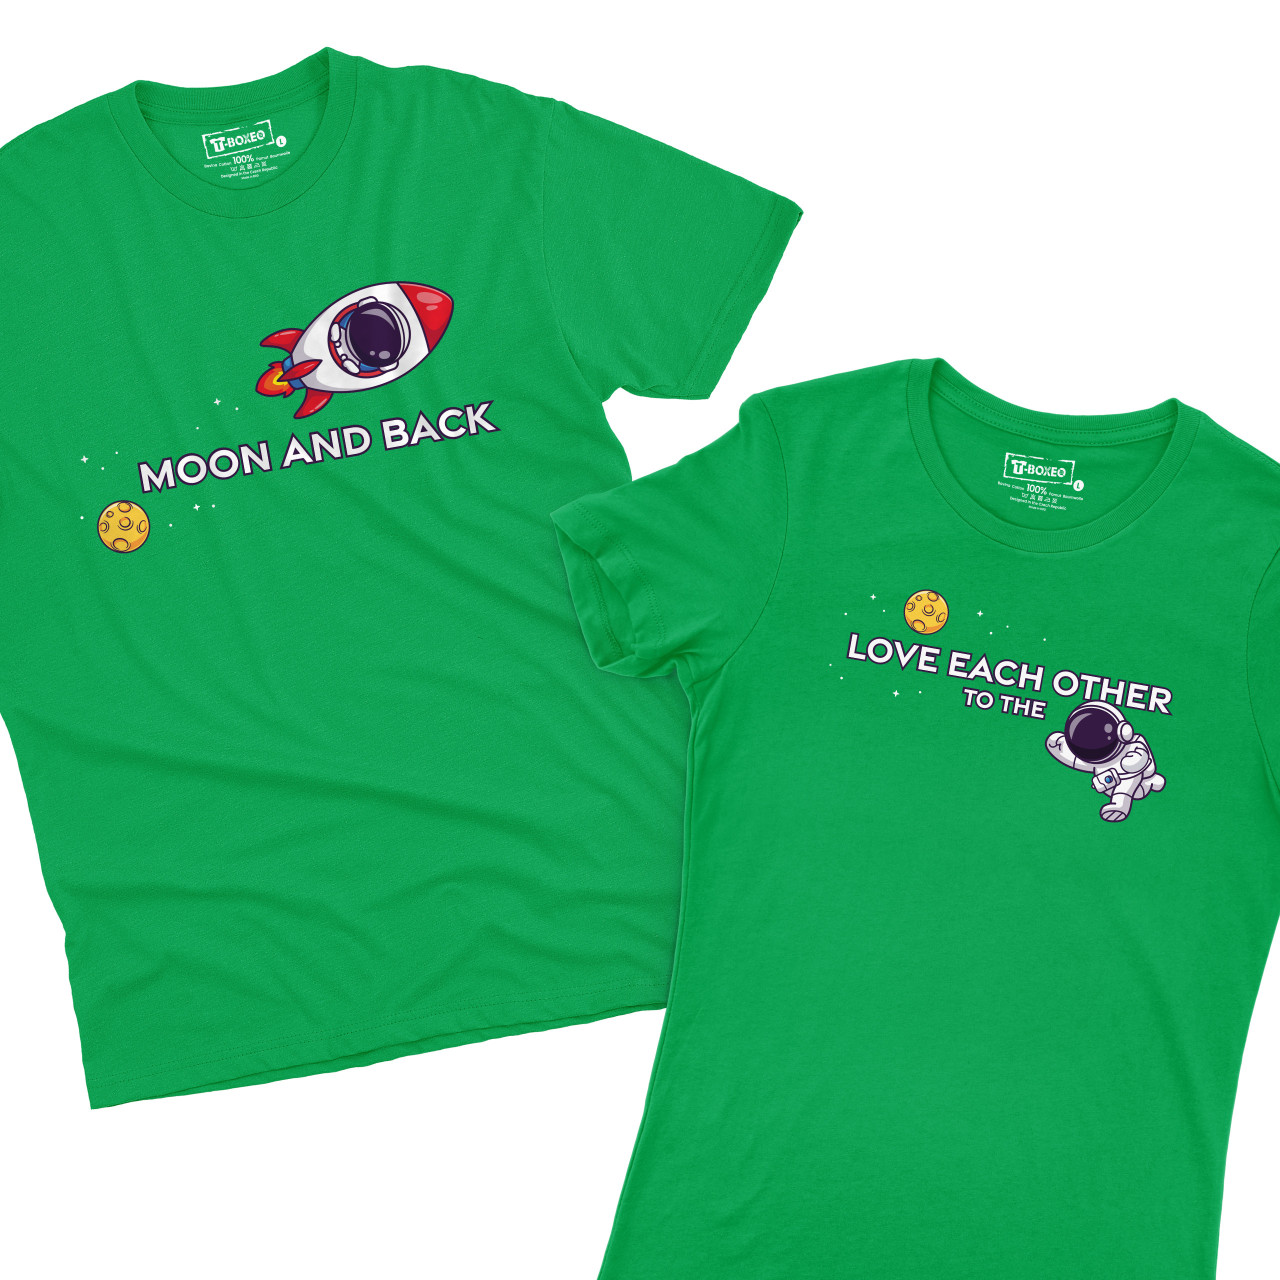 Pánské tričko s potiskem “Love each other to the Moon and back”